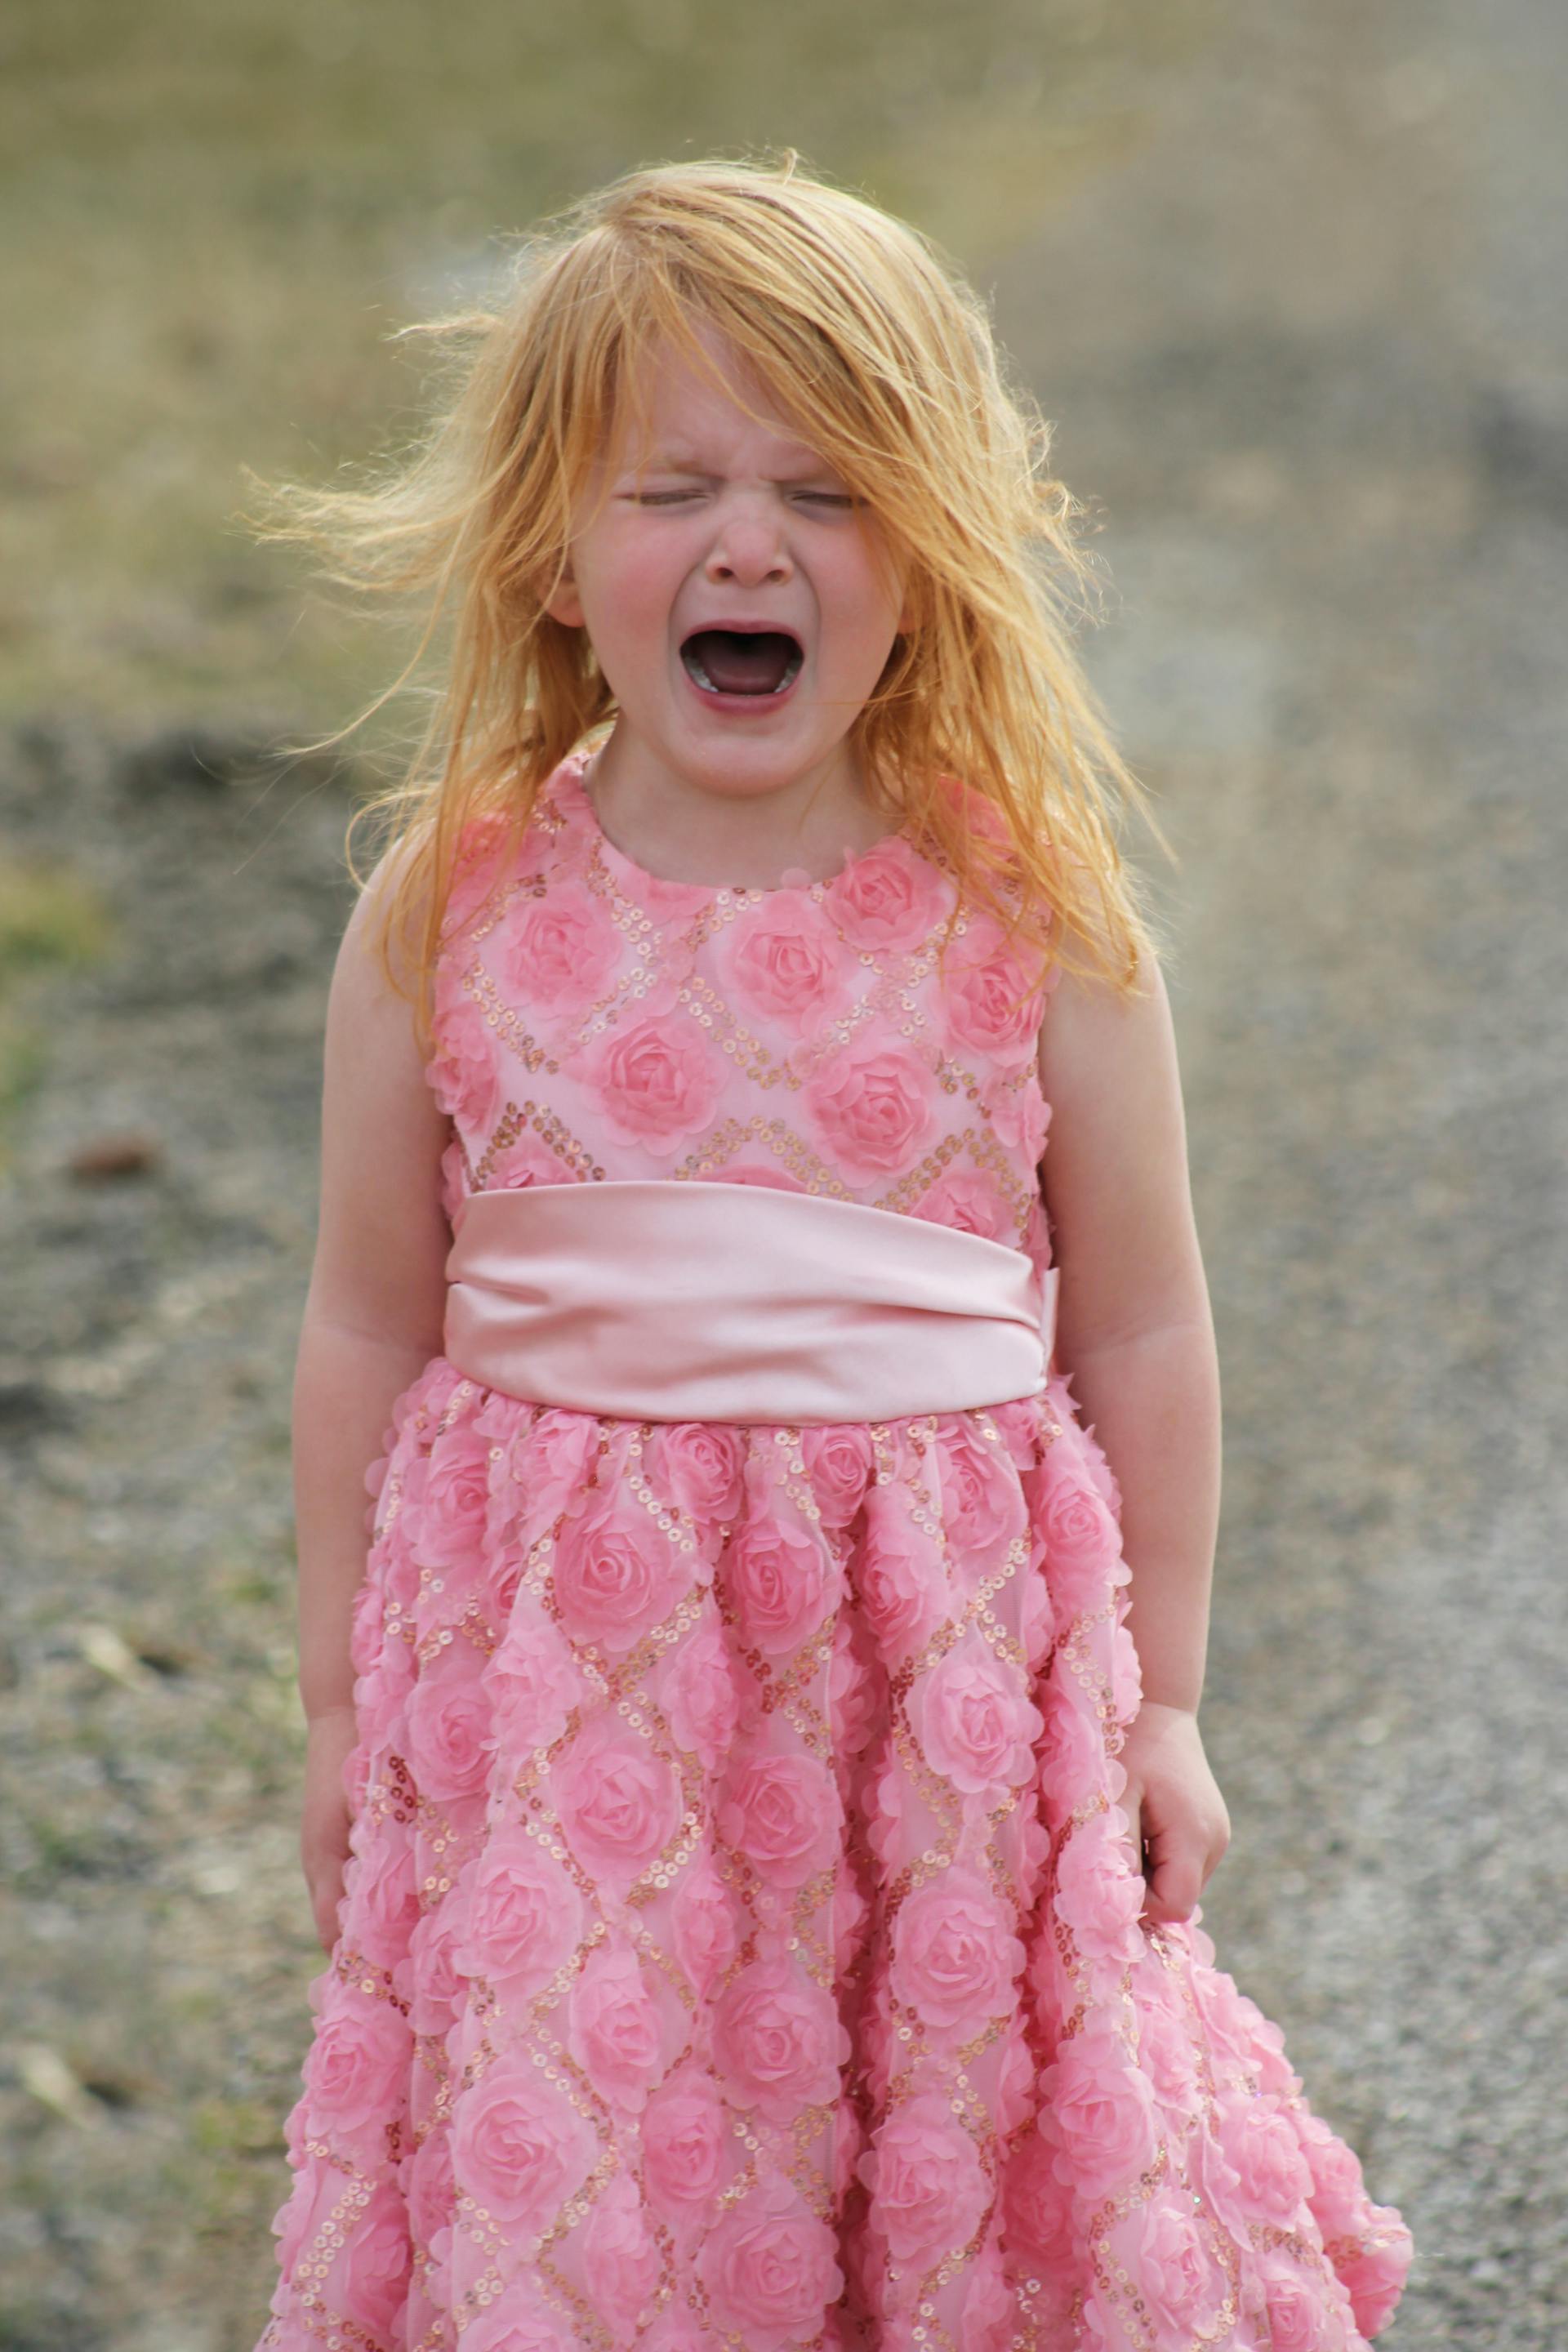 Una niña llorando | Fuente: Pexels